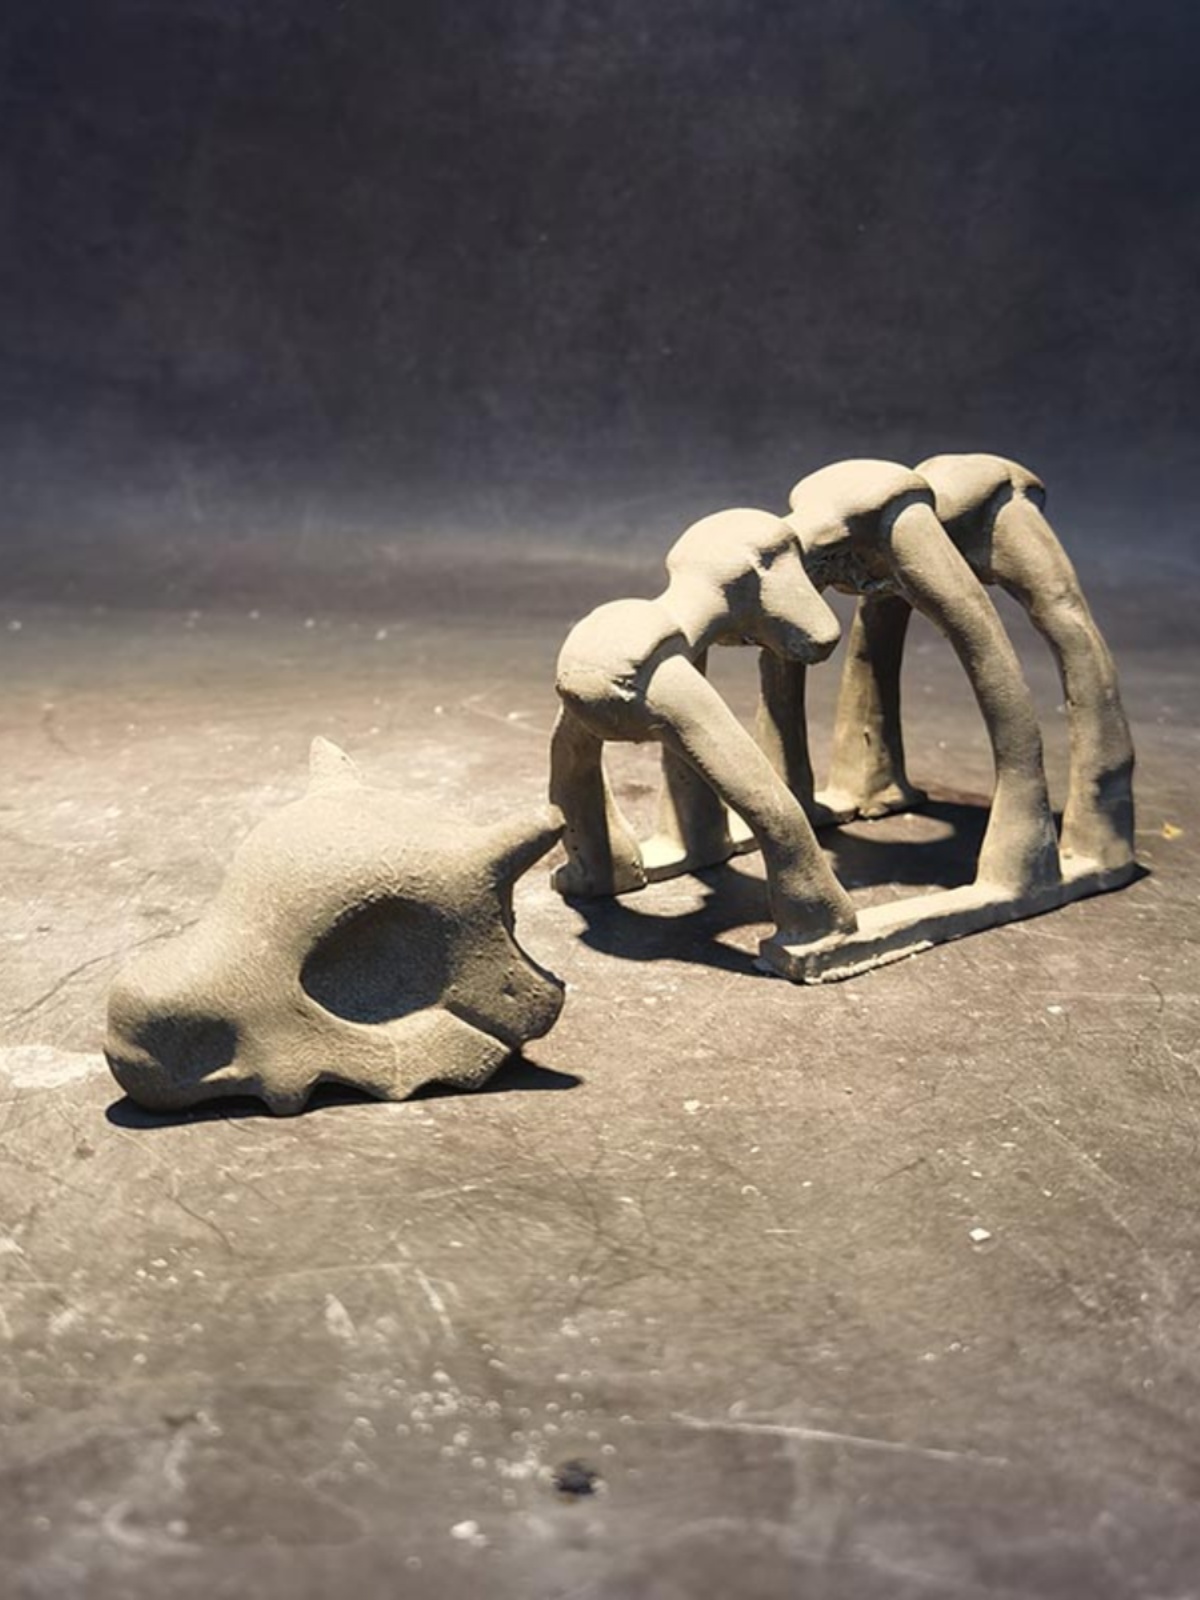 冬官手作 鱼缸水草缸造景水泥装饰摆件大象动物骨头化石骷髅头骨